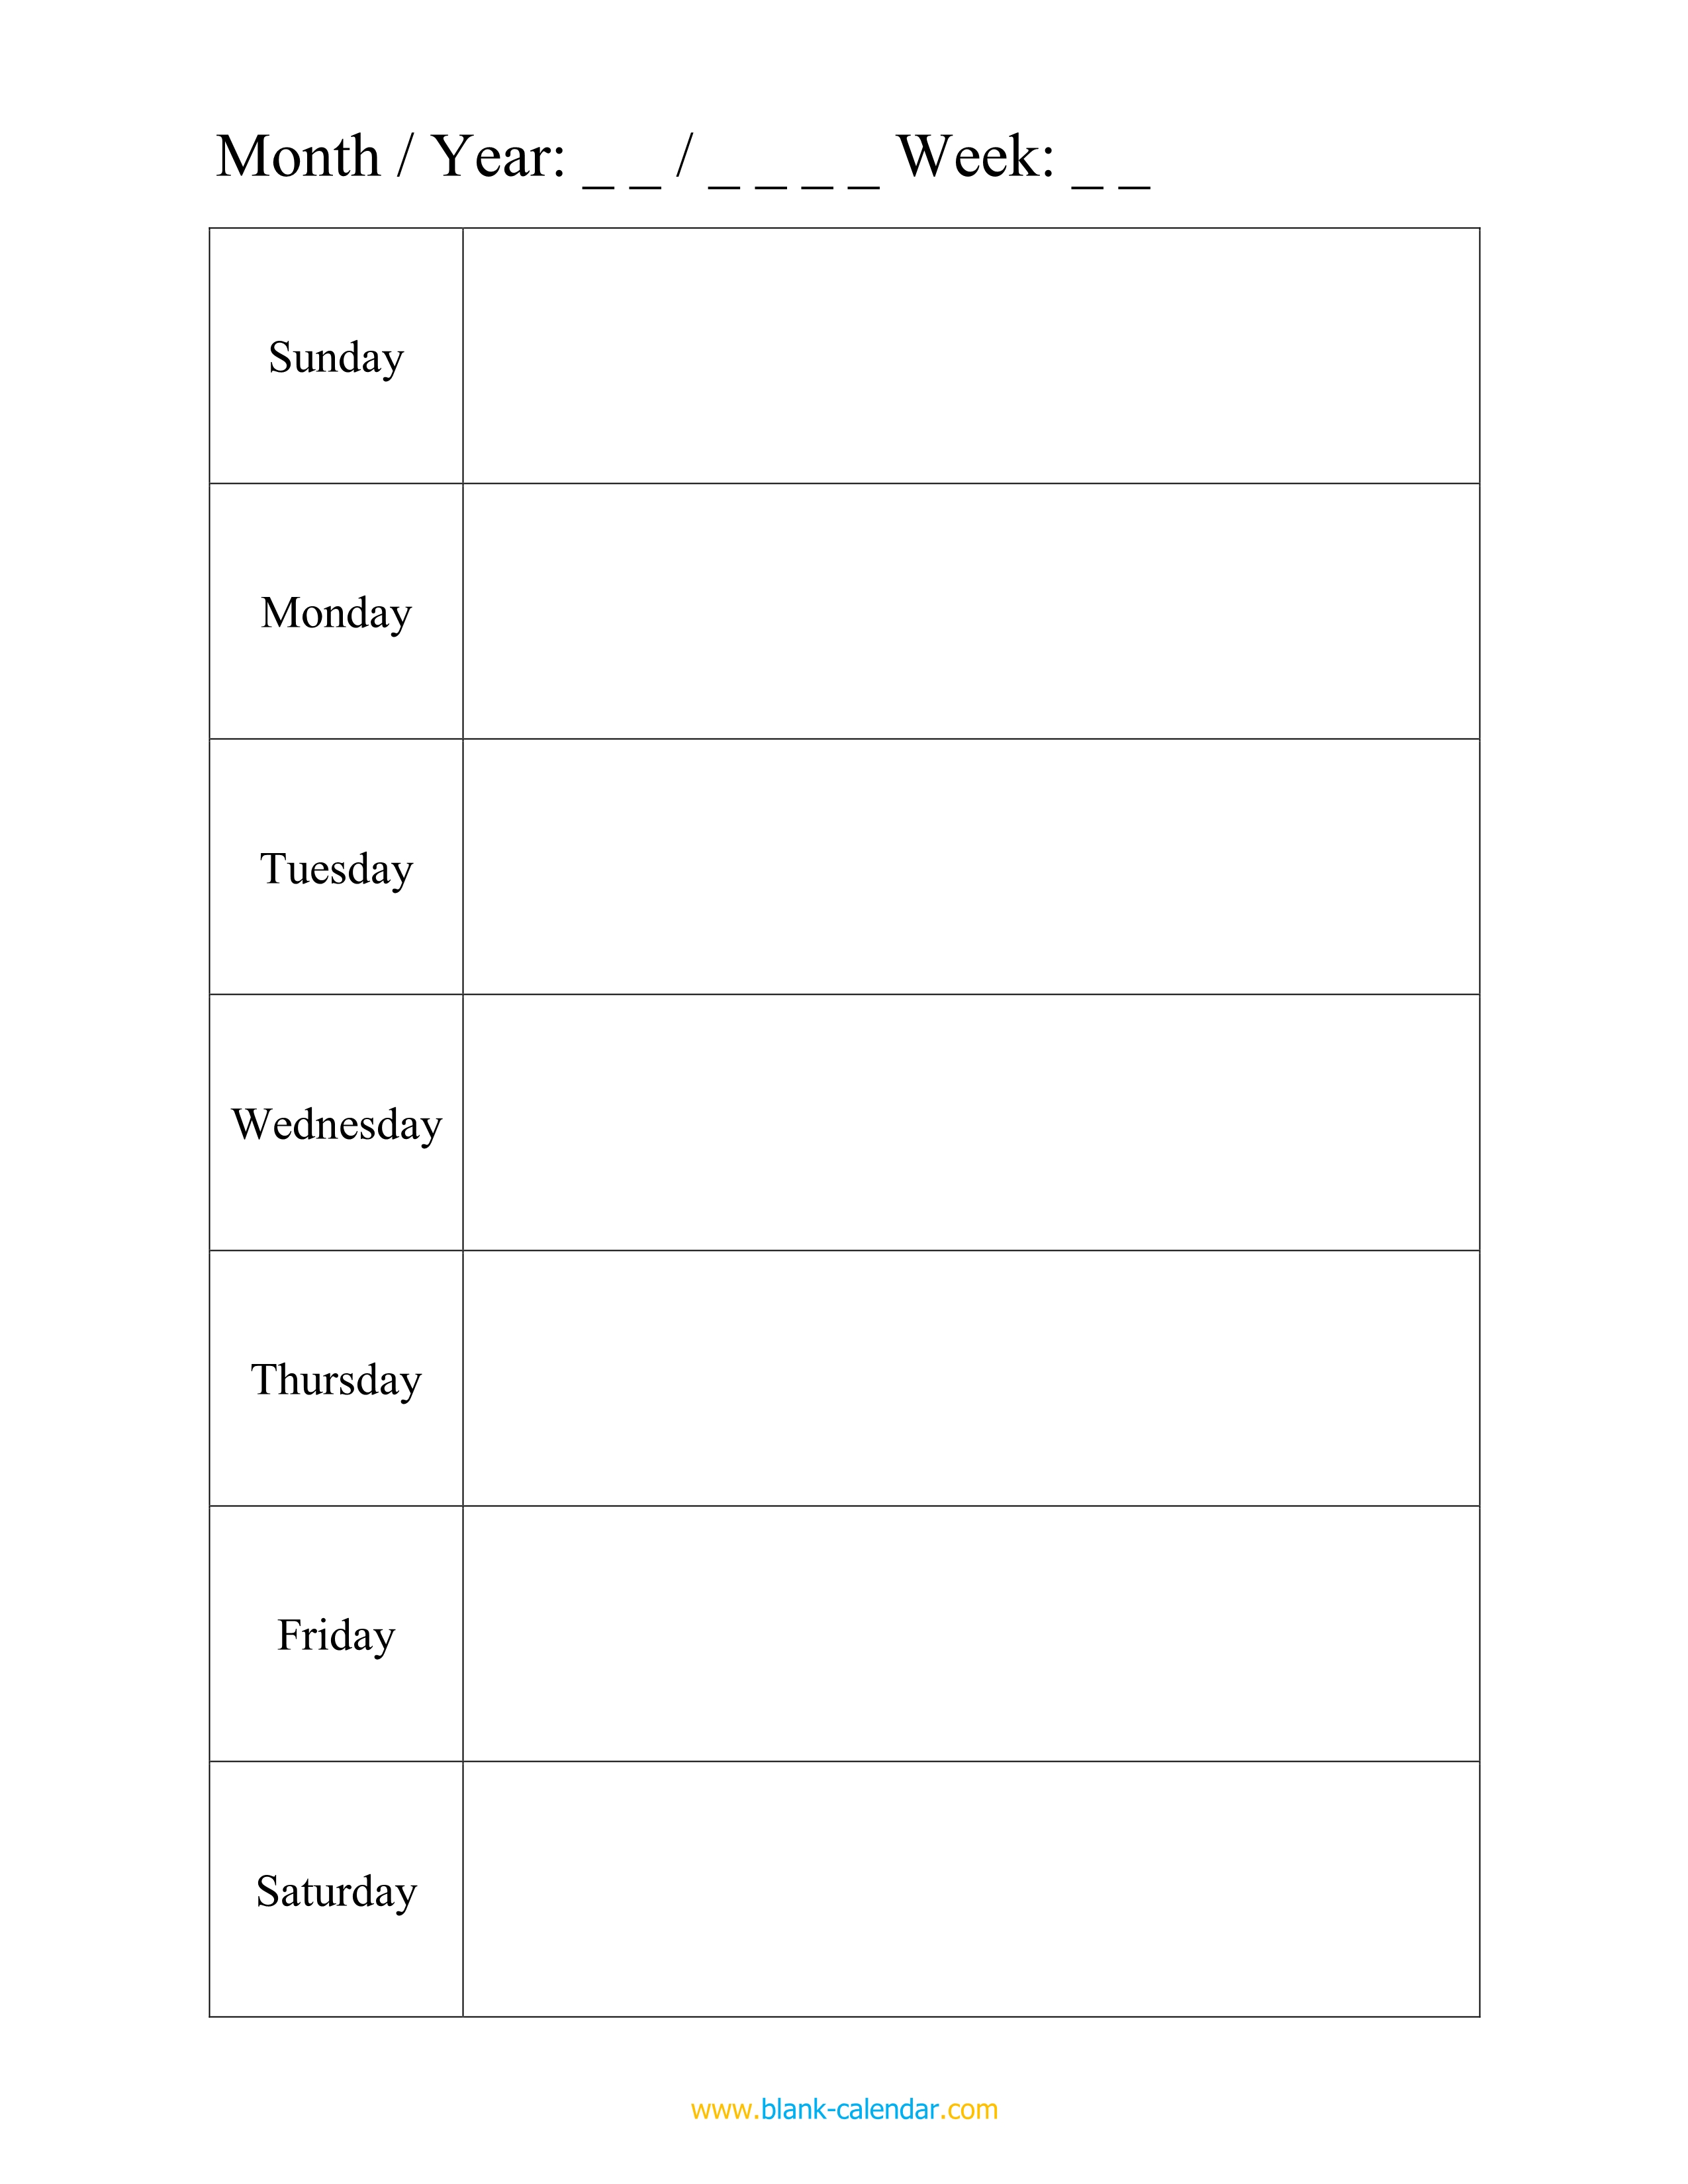 undated-weekly-planner-2021-printable-weekly-agenda-template-etsy